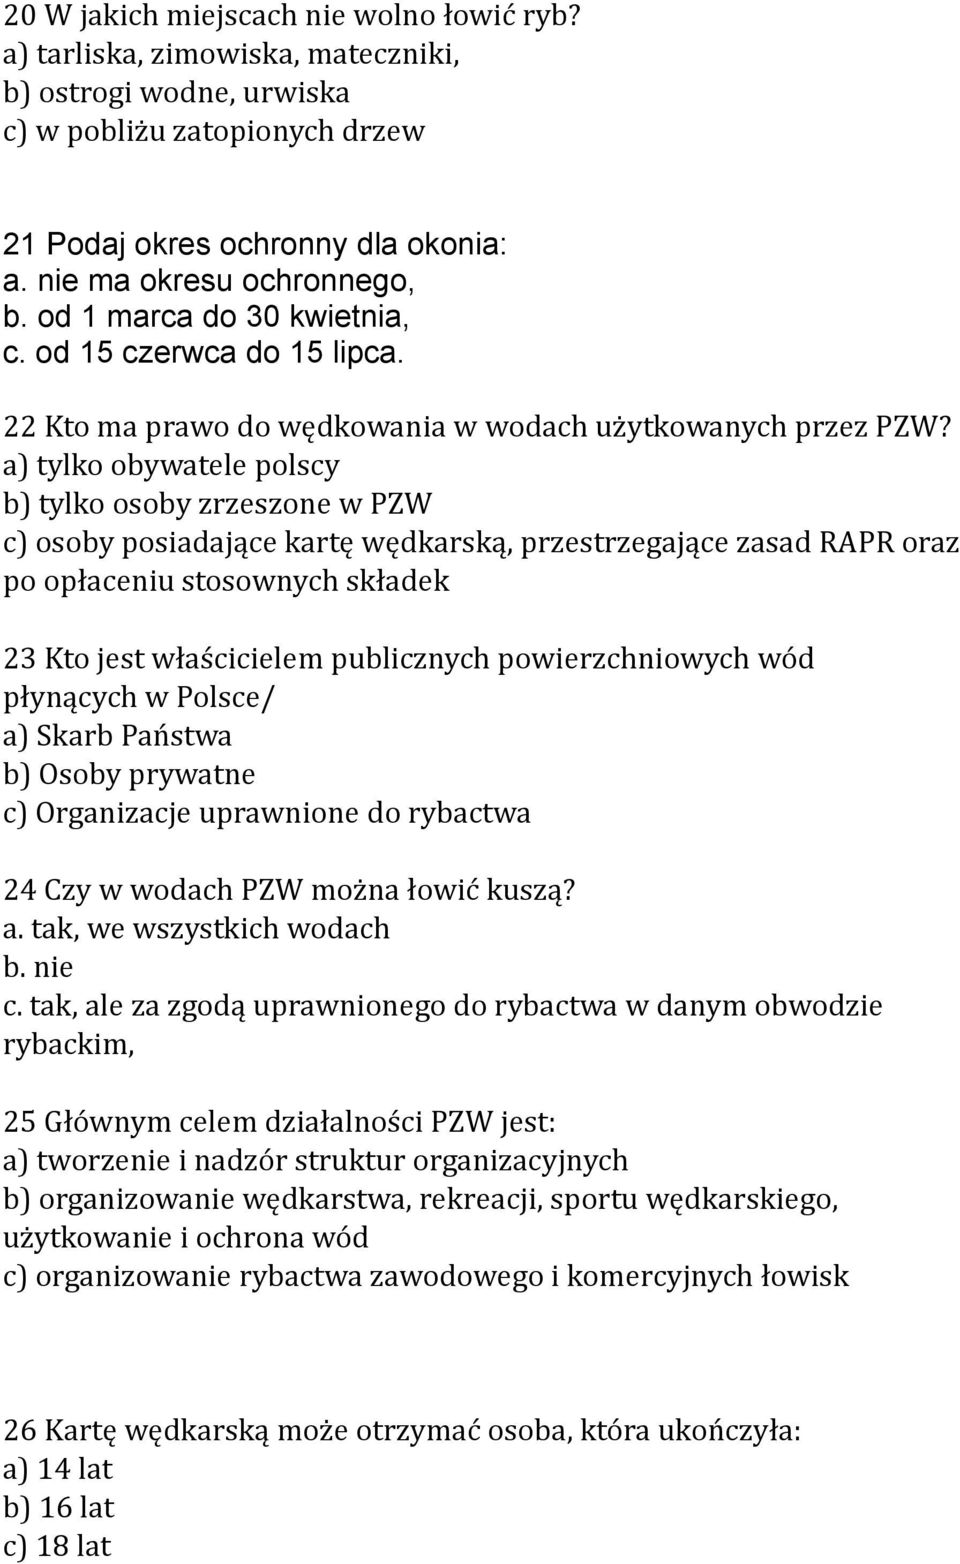 a) tylko obywatele polscy b) tylko osoby zrzeszone w PZW c) osoby posiadające kartę wędkarską, przestrzegające zasad RAPR oraz po opłaceniu stosownych składek 23 Kto jest właścicielem publicznych